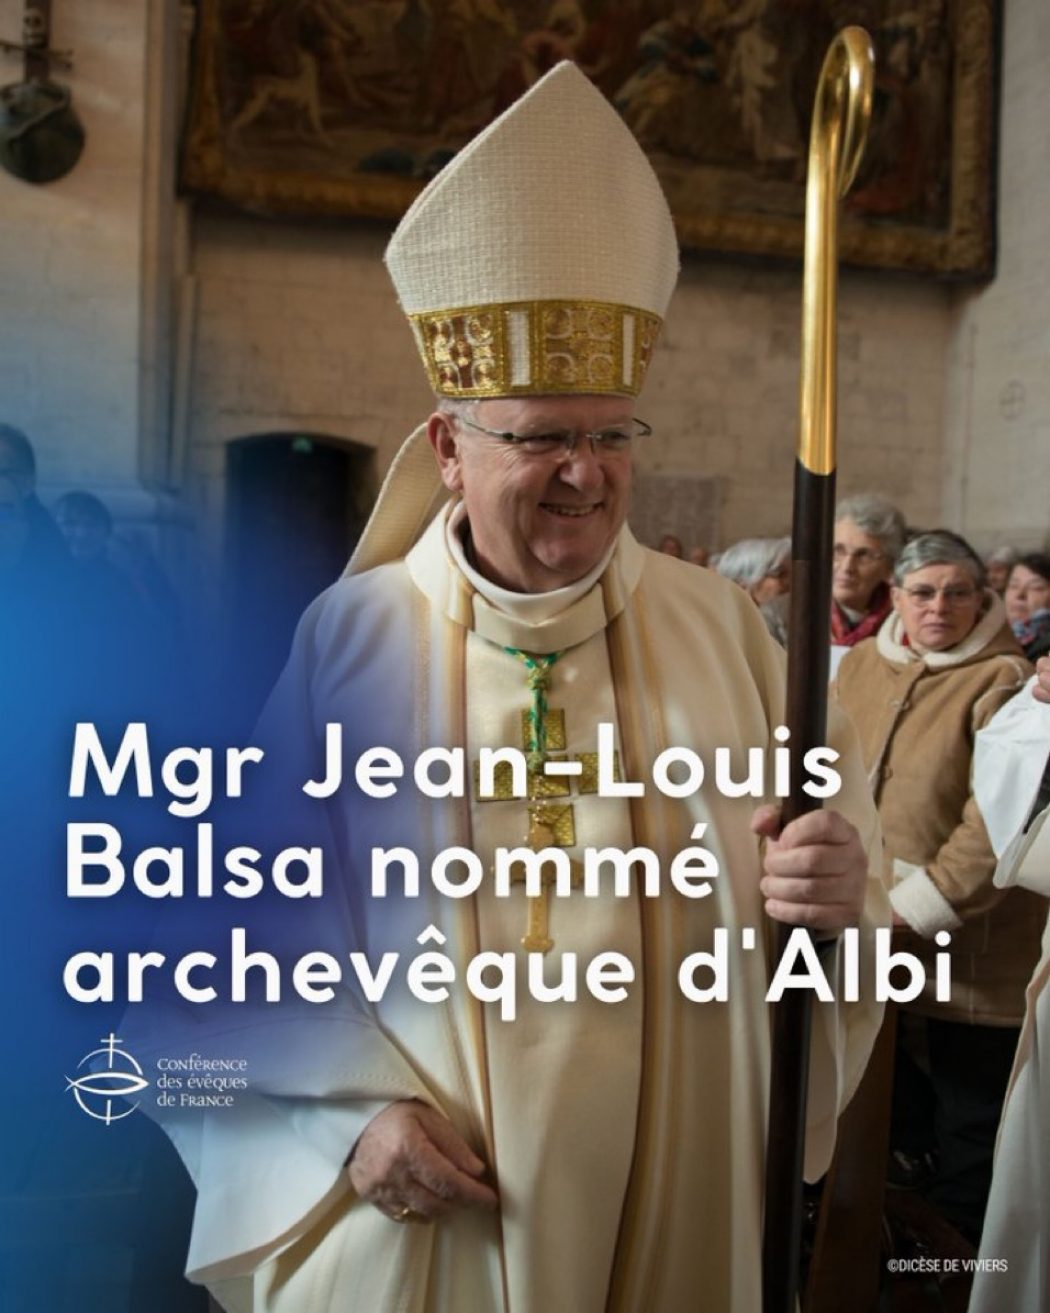 Monseigneur Jean-Louis Balsa nommé archevêque d’Albi